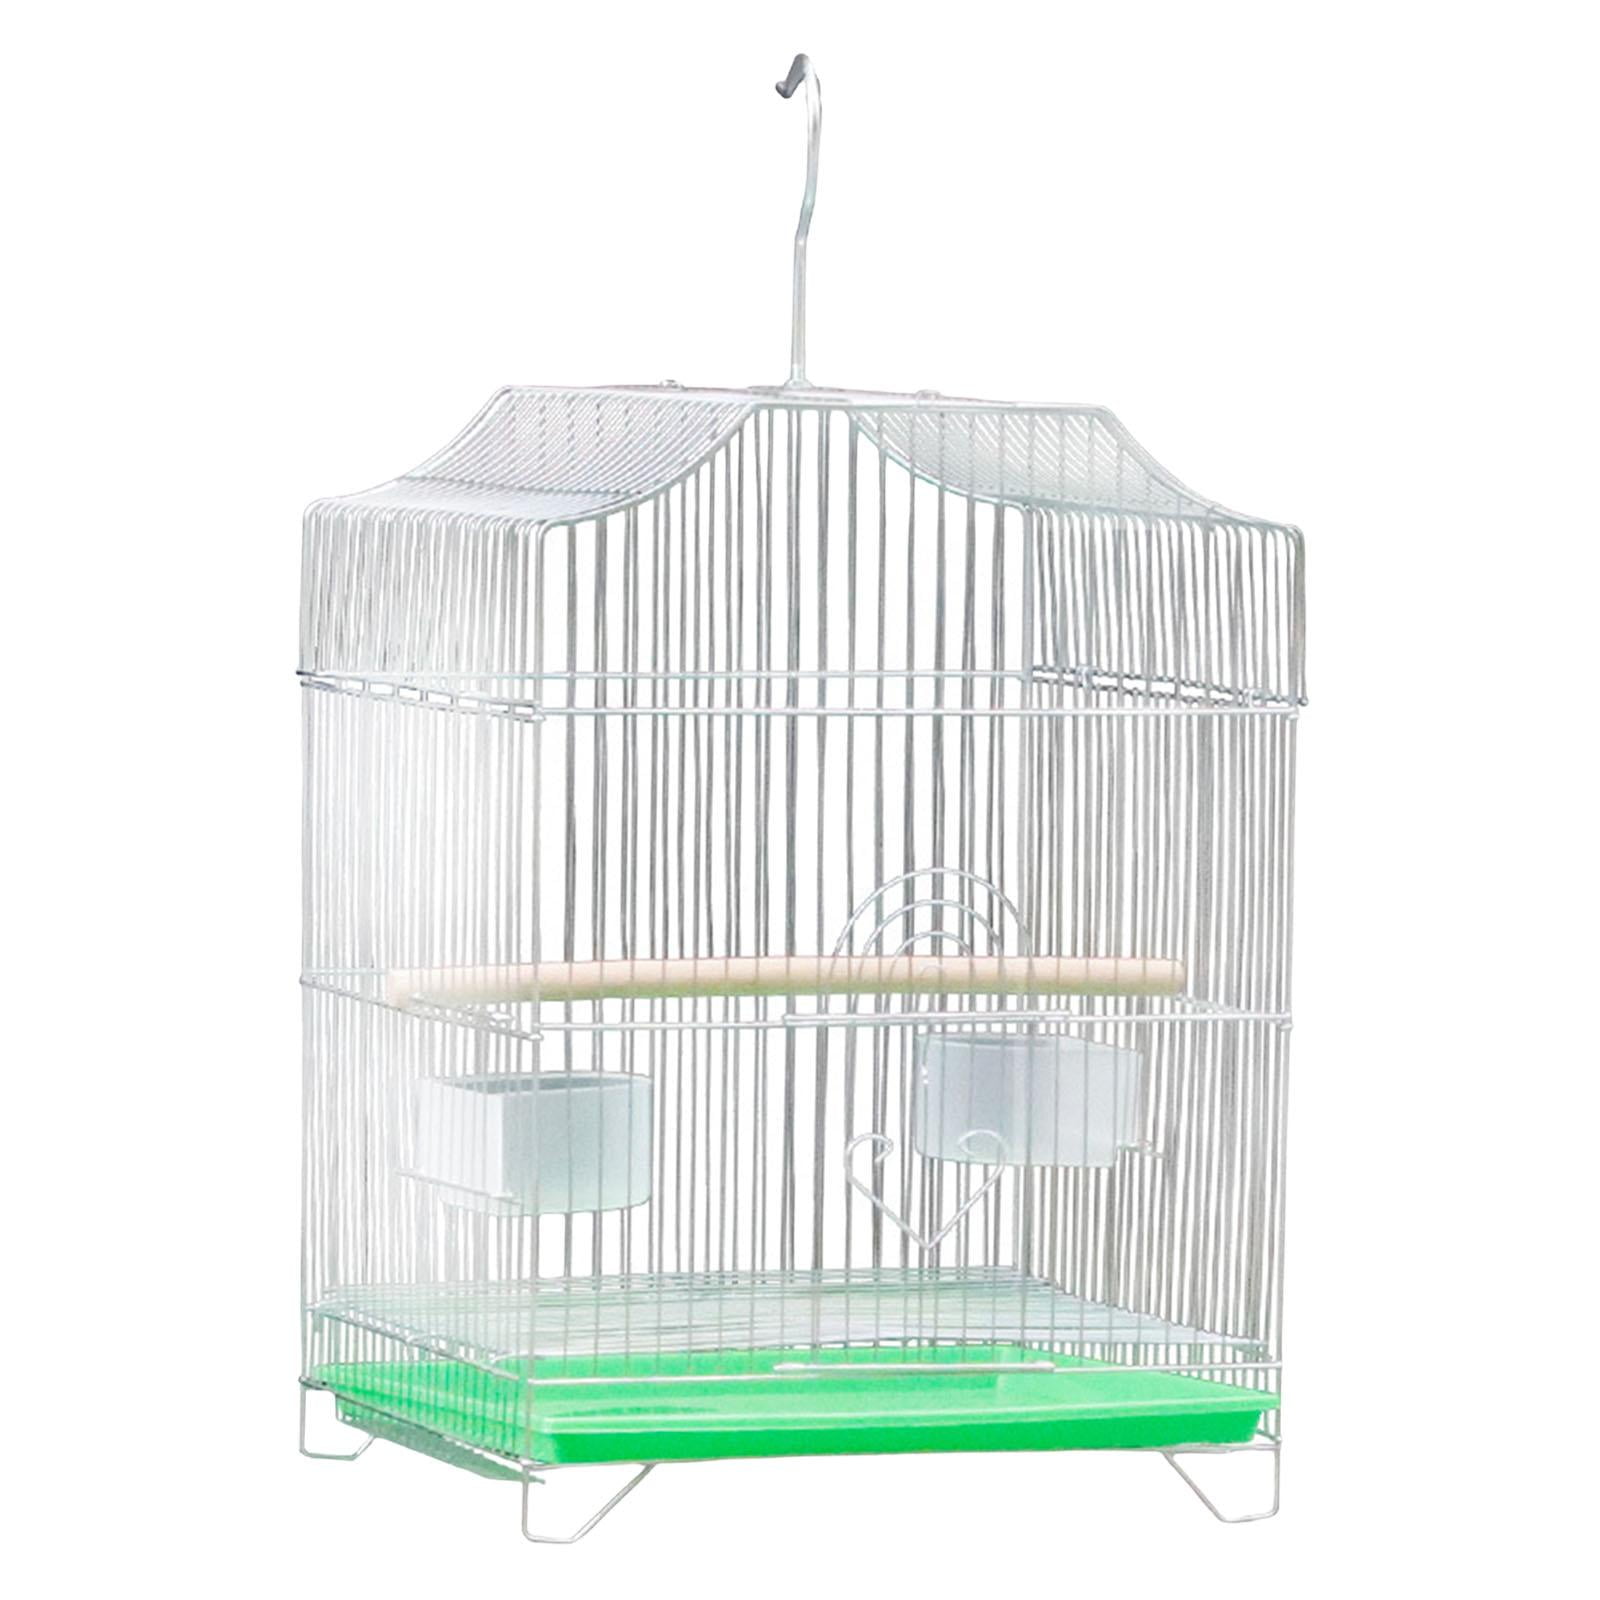 Buy Bird Cage Liner online